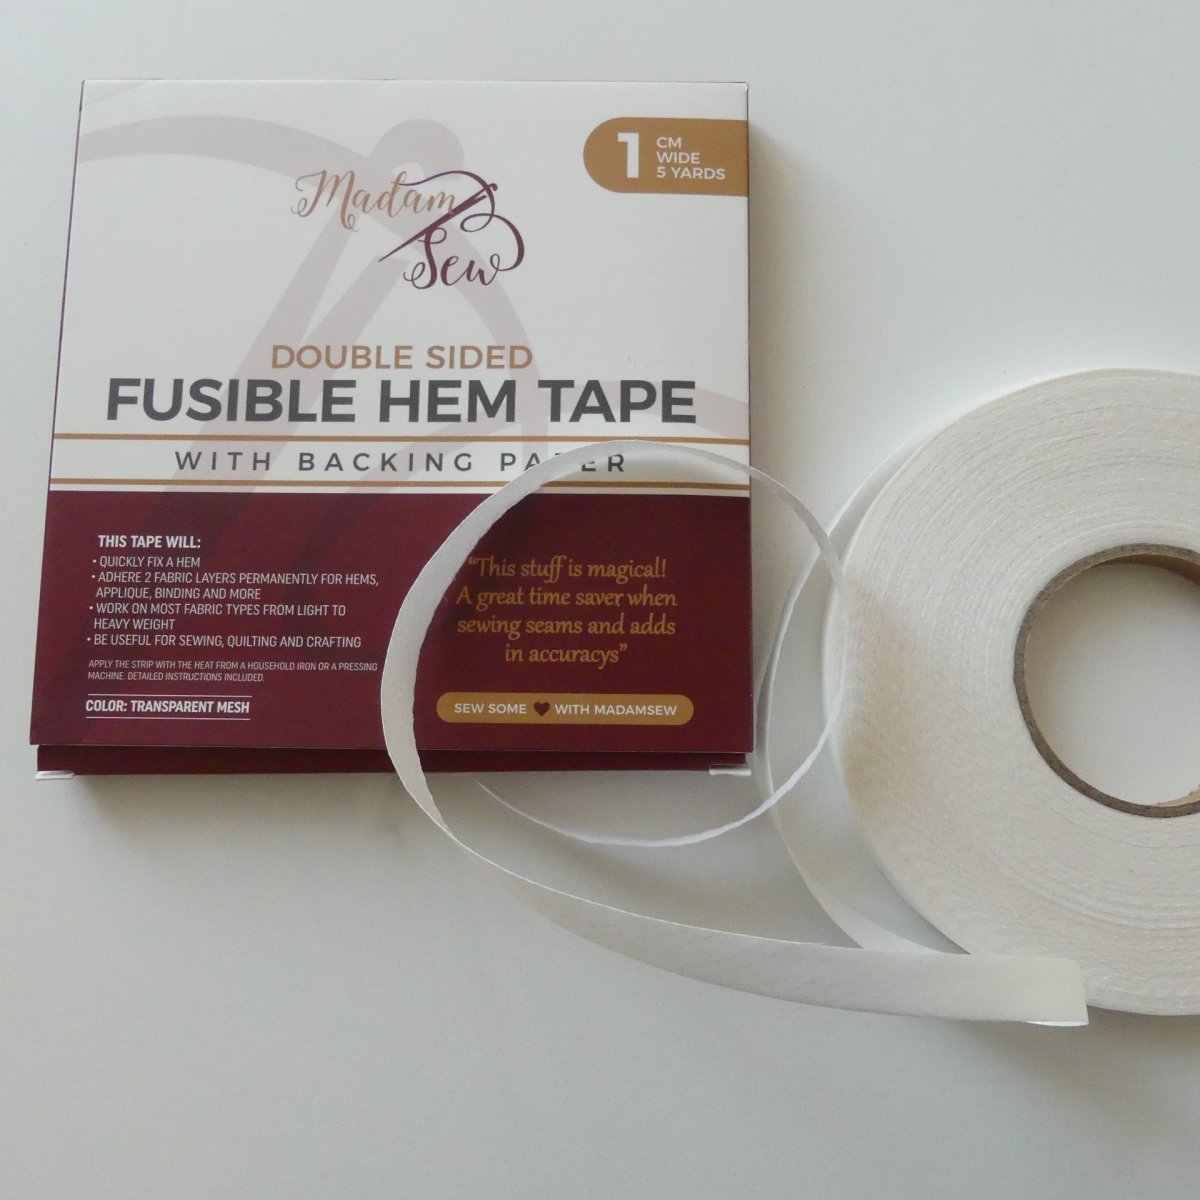 Fusible Hem Tape - 1 cm wide